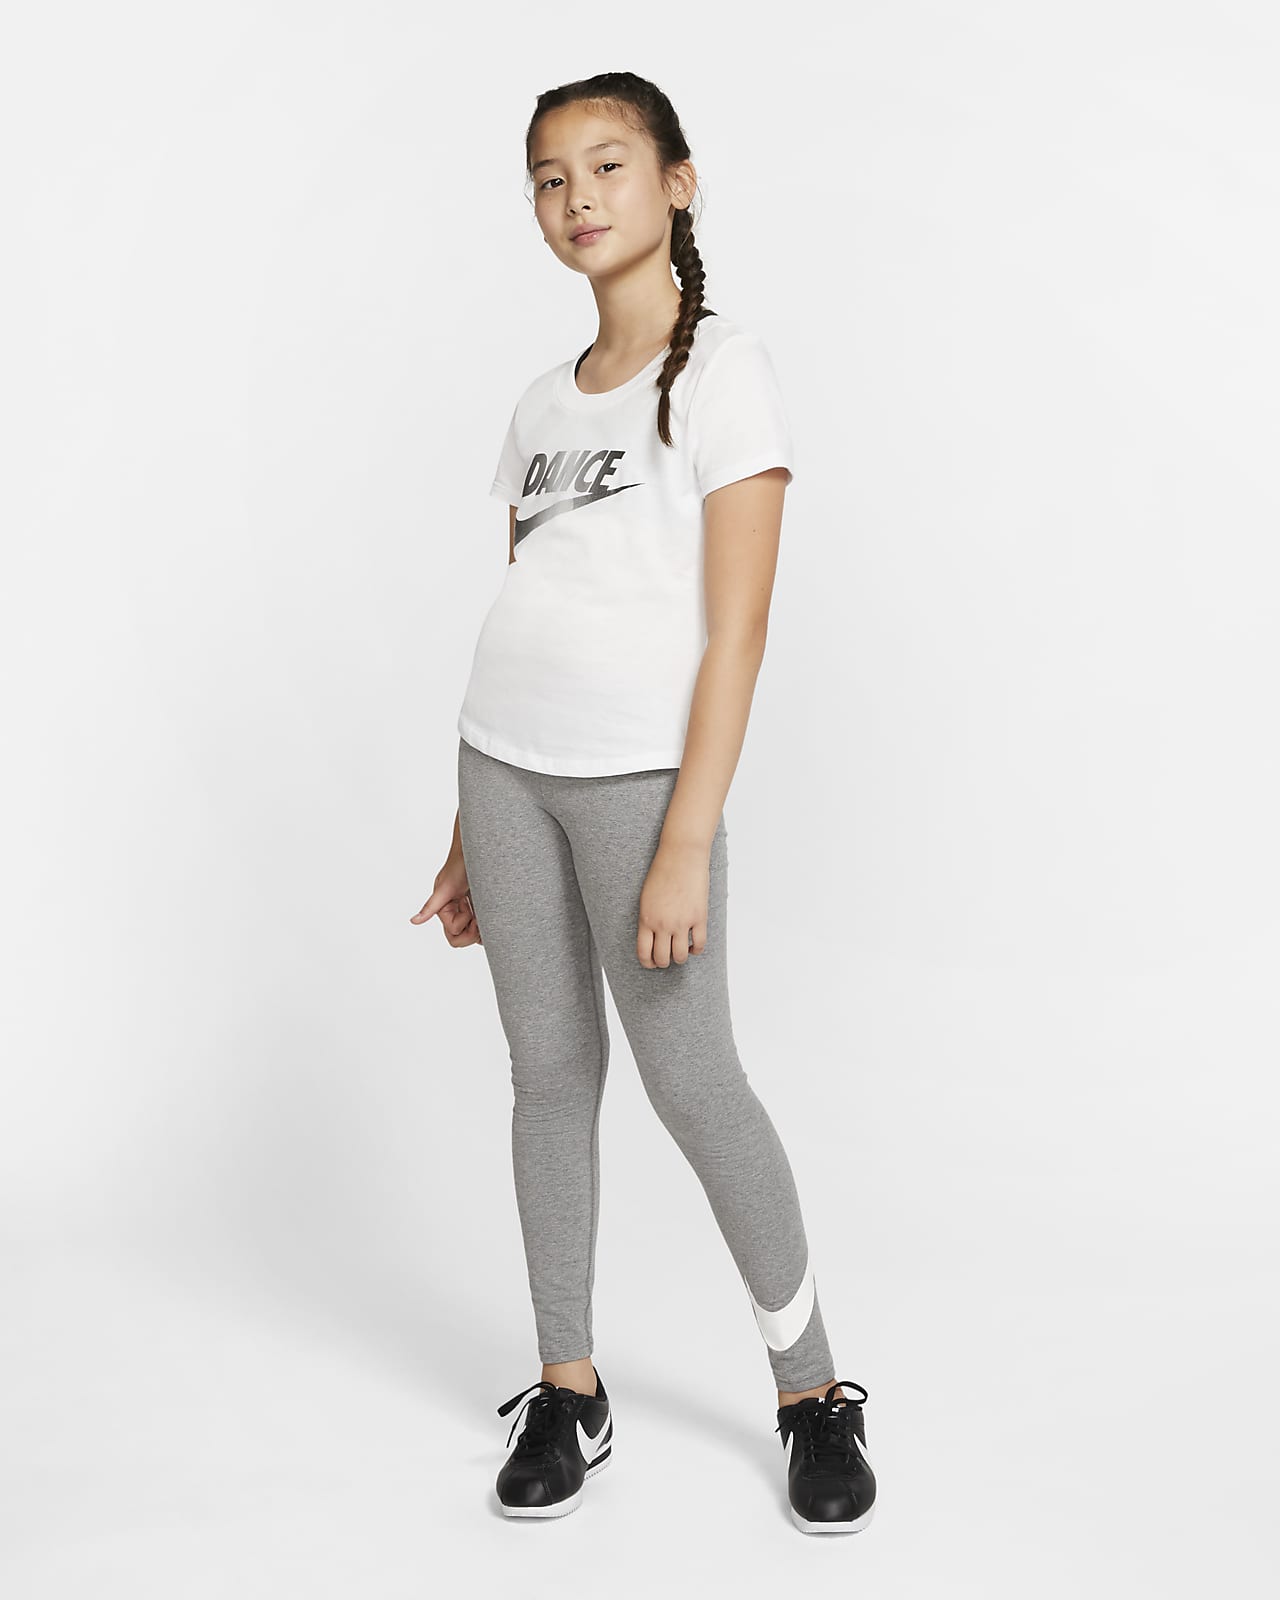 Nike Older Girls Pro Leggings - Grey | Life Style Sports UK